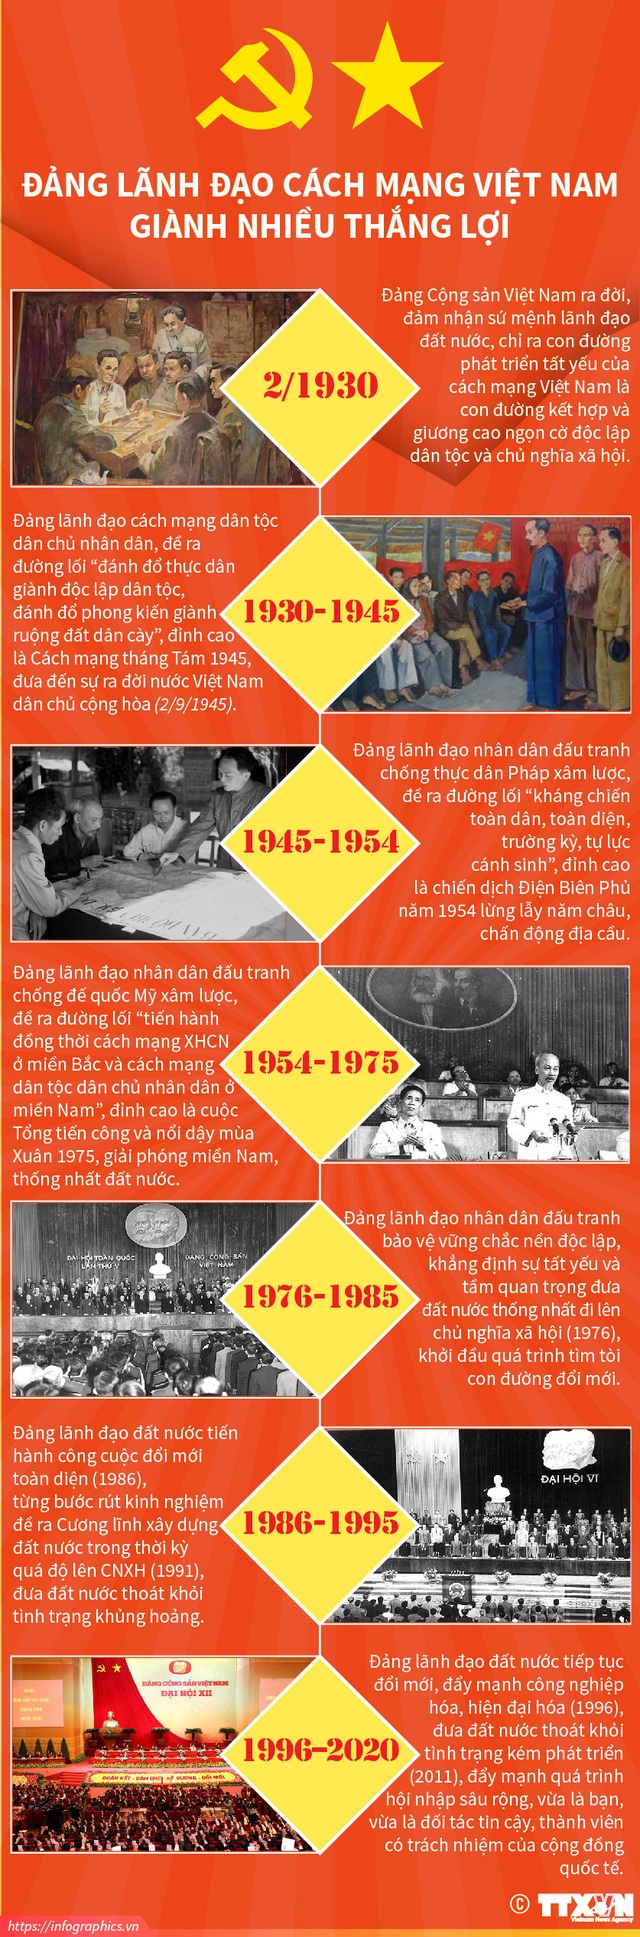 Hãy cùng nhau chiêm ngưỡng những cột mốc lịch sử trong Cách mạng Việt Nam qua những bức ảnh đầy ý nghĩa. Thắng lợi của đất nước là do sự đoàn kết và nỗ lực của toàn dân. Những hình ảnh về những cột mốc lịch sử sẽ giúp bạn hiểu rõ và cảm nhận được sự nỗ lực đó. Hãy để những hình ảnh này truyền cảm hứng cho bạn trong những công việc tiếp theo.